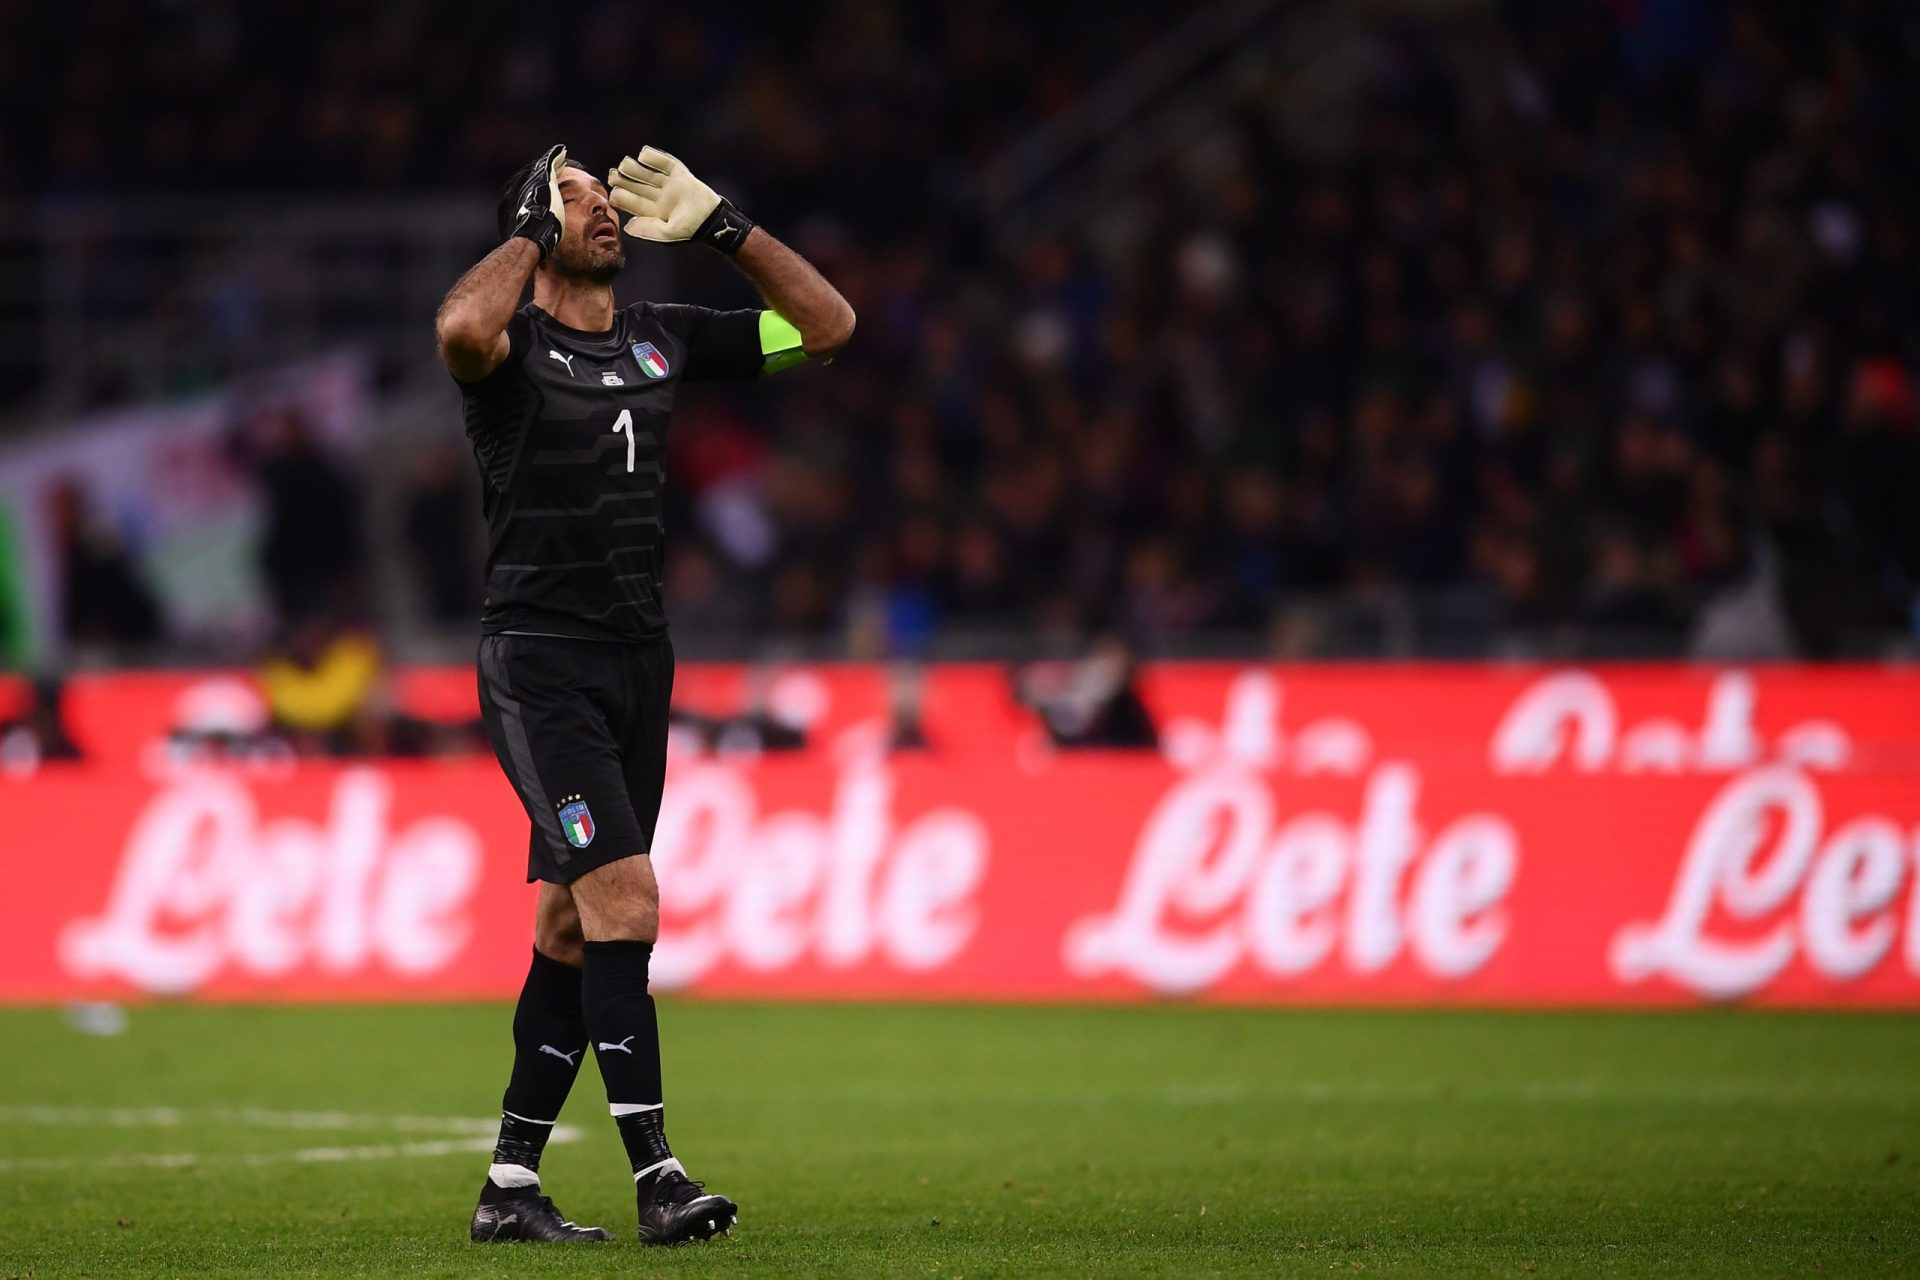 Itália. Buffon em lágrimas diz adeus à seleção (com vídeo)